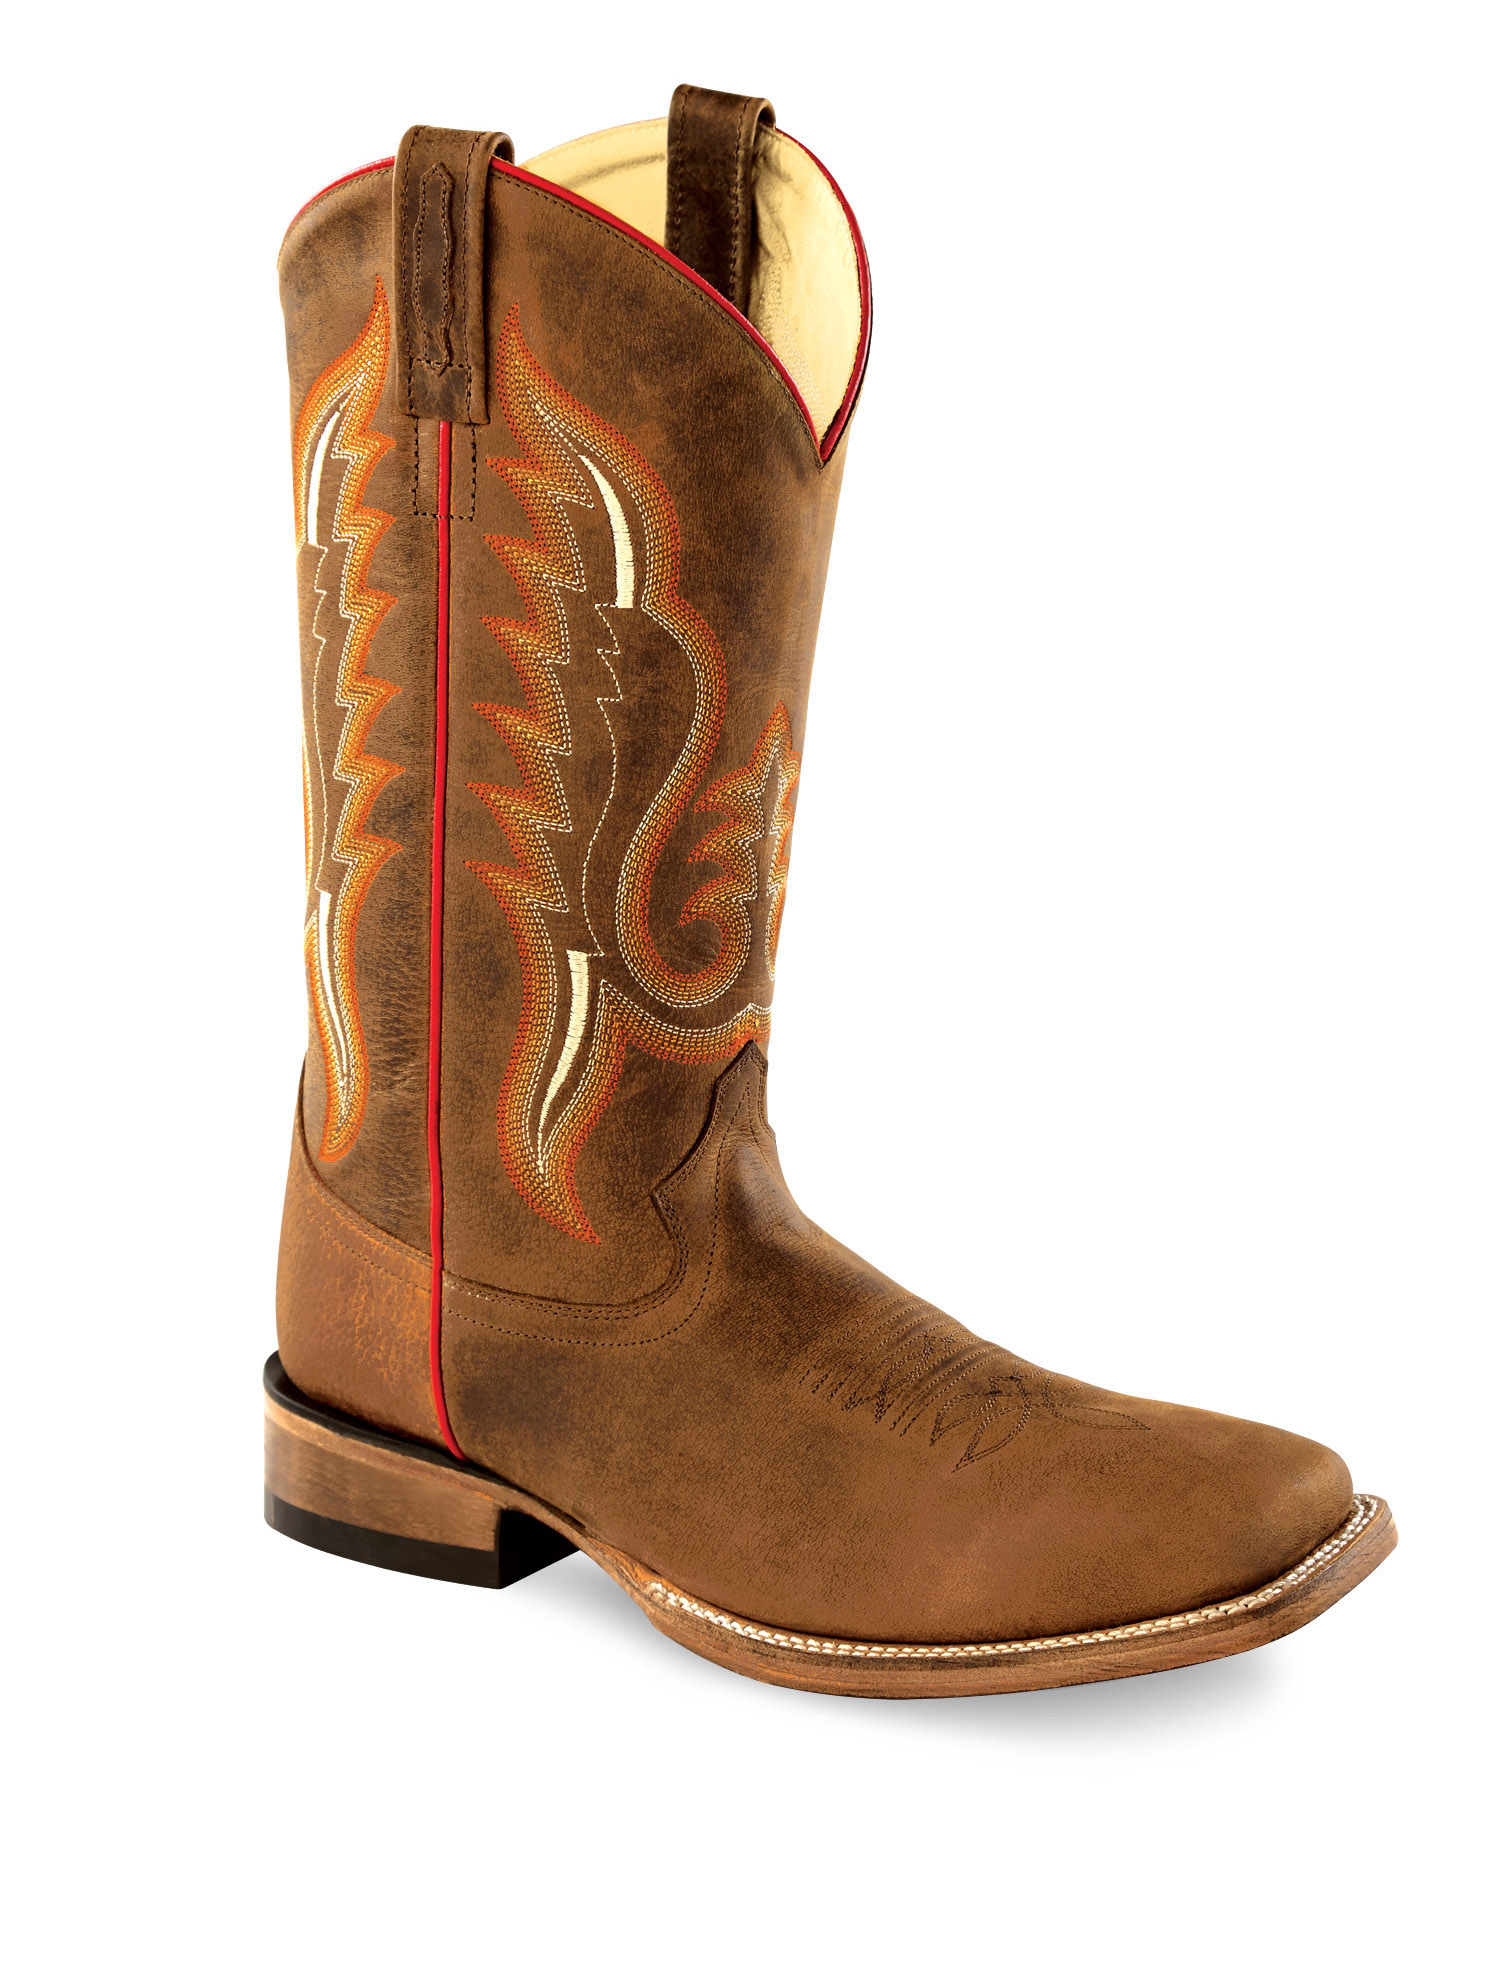 Cowboy boots men BSM1852, brown-copper